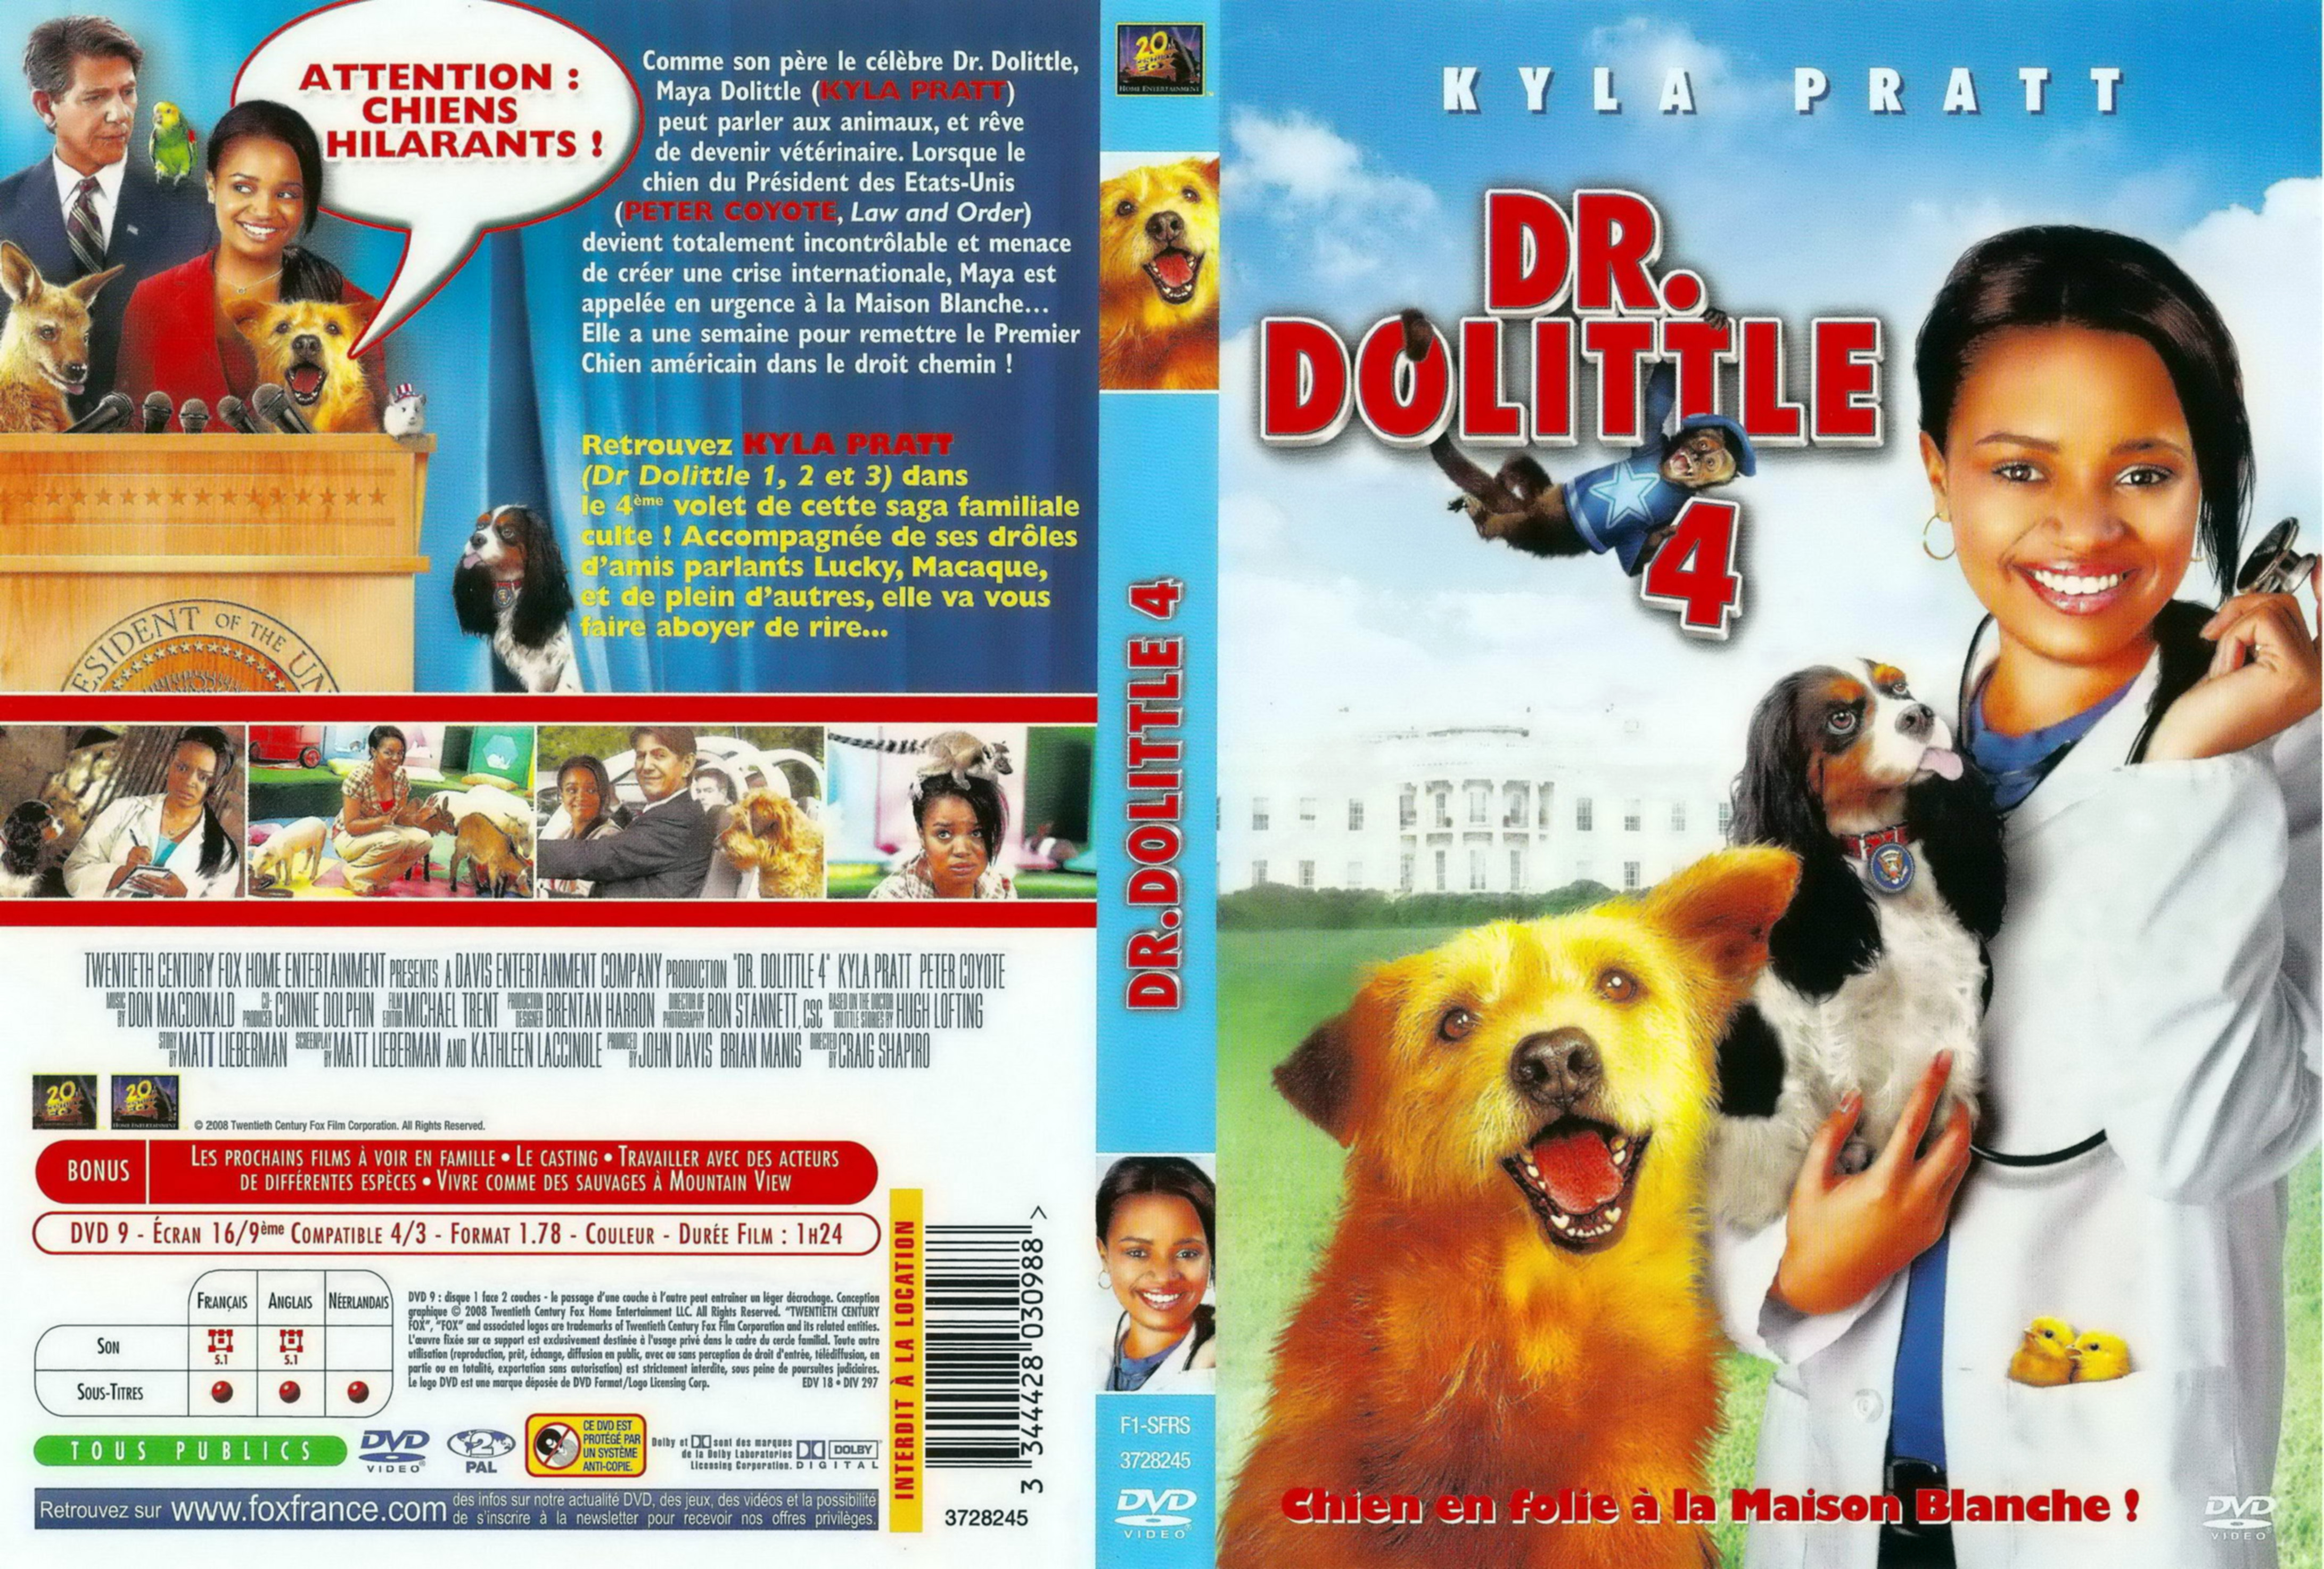 Jaquette DVD Docteur Dolittle 4